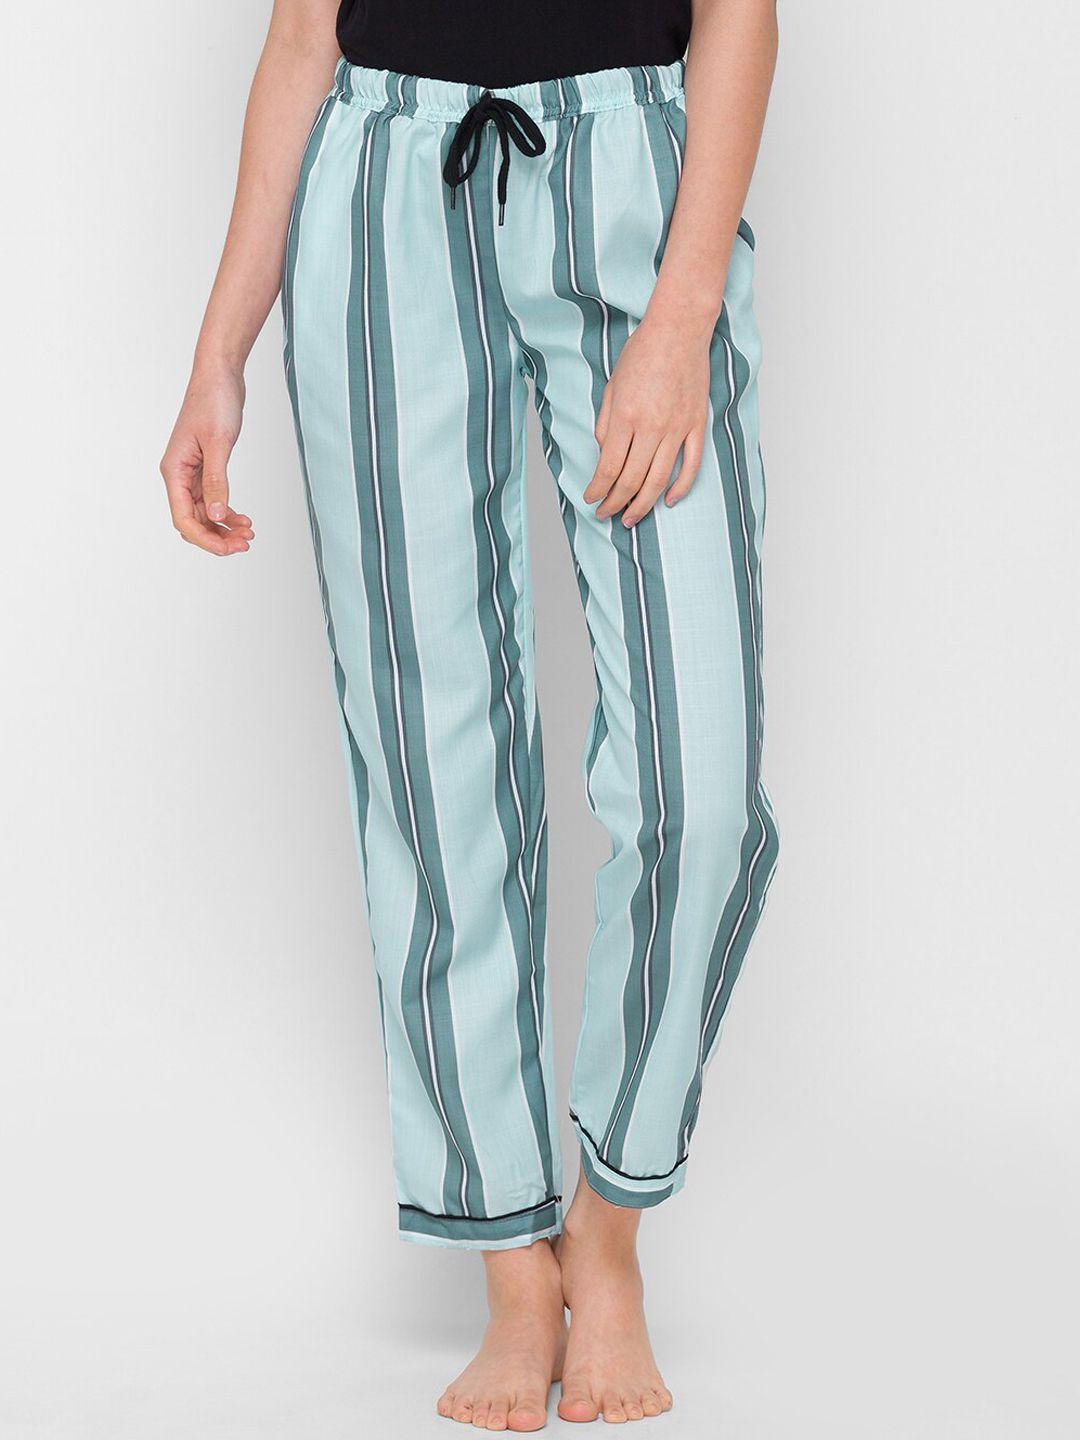 fashionrack women blue striped lounge pants